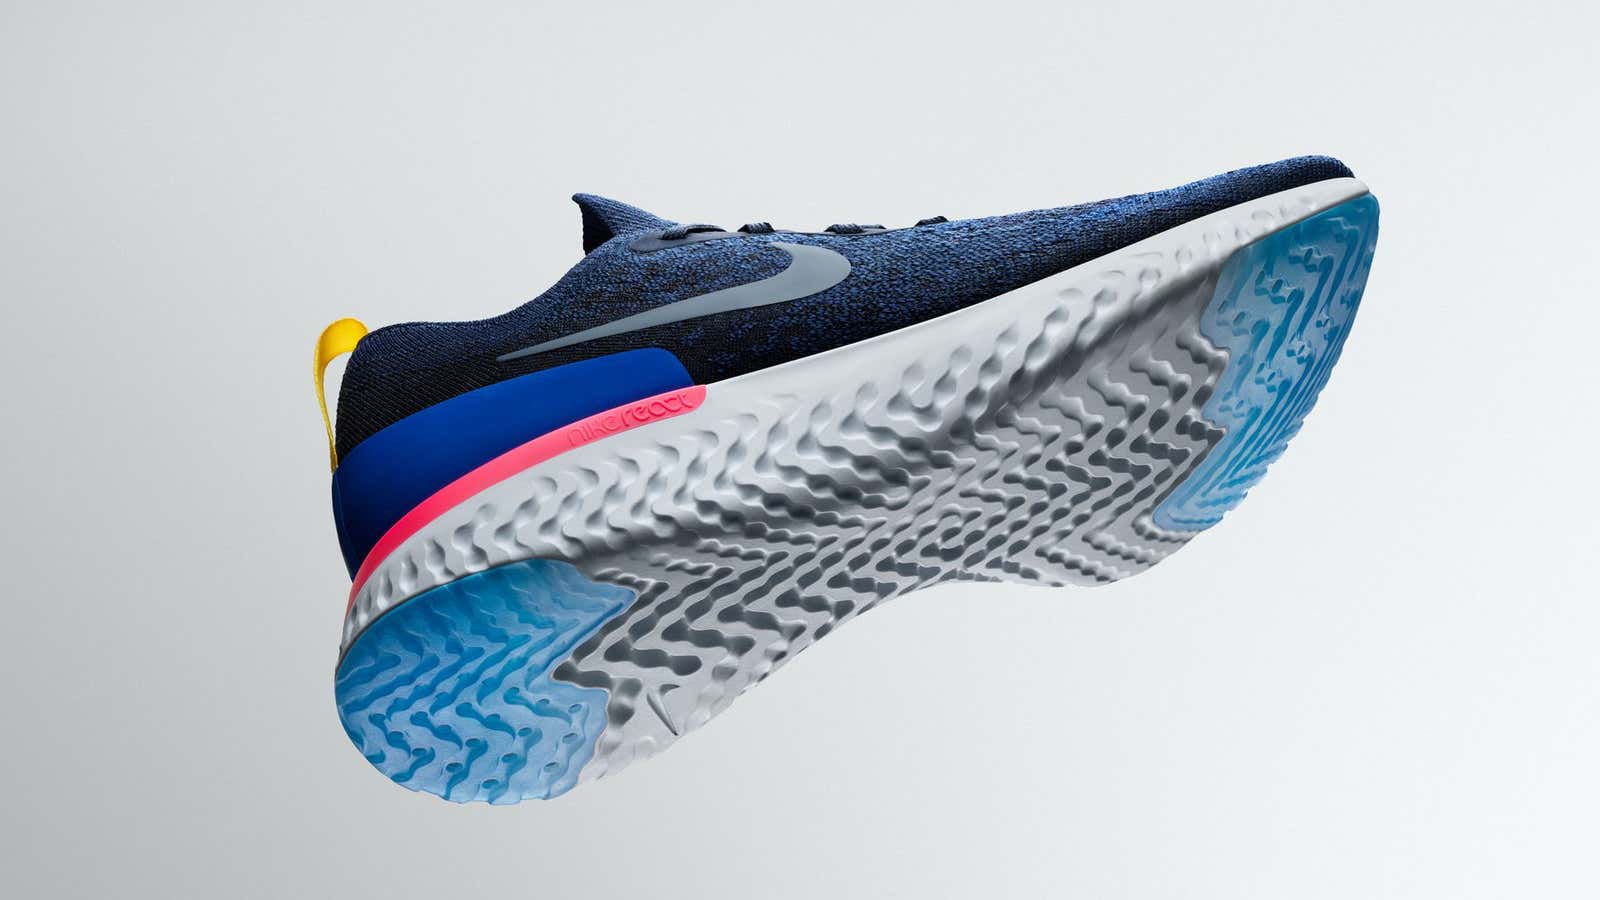 Verdulero Cuerda radical Nike Epic React Flyknit: Nike's next big thing in comfortable sneakers